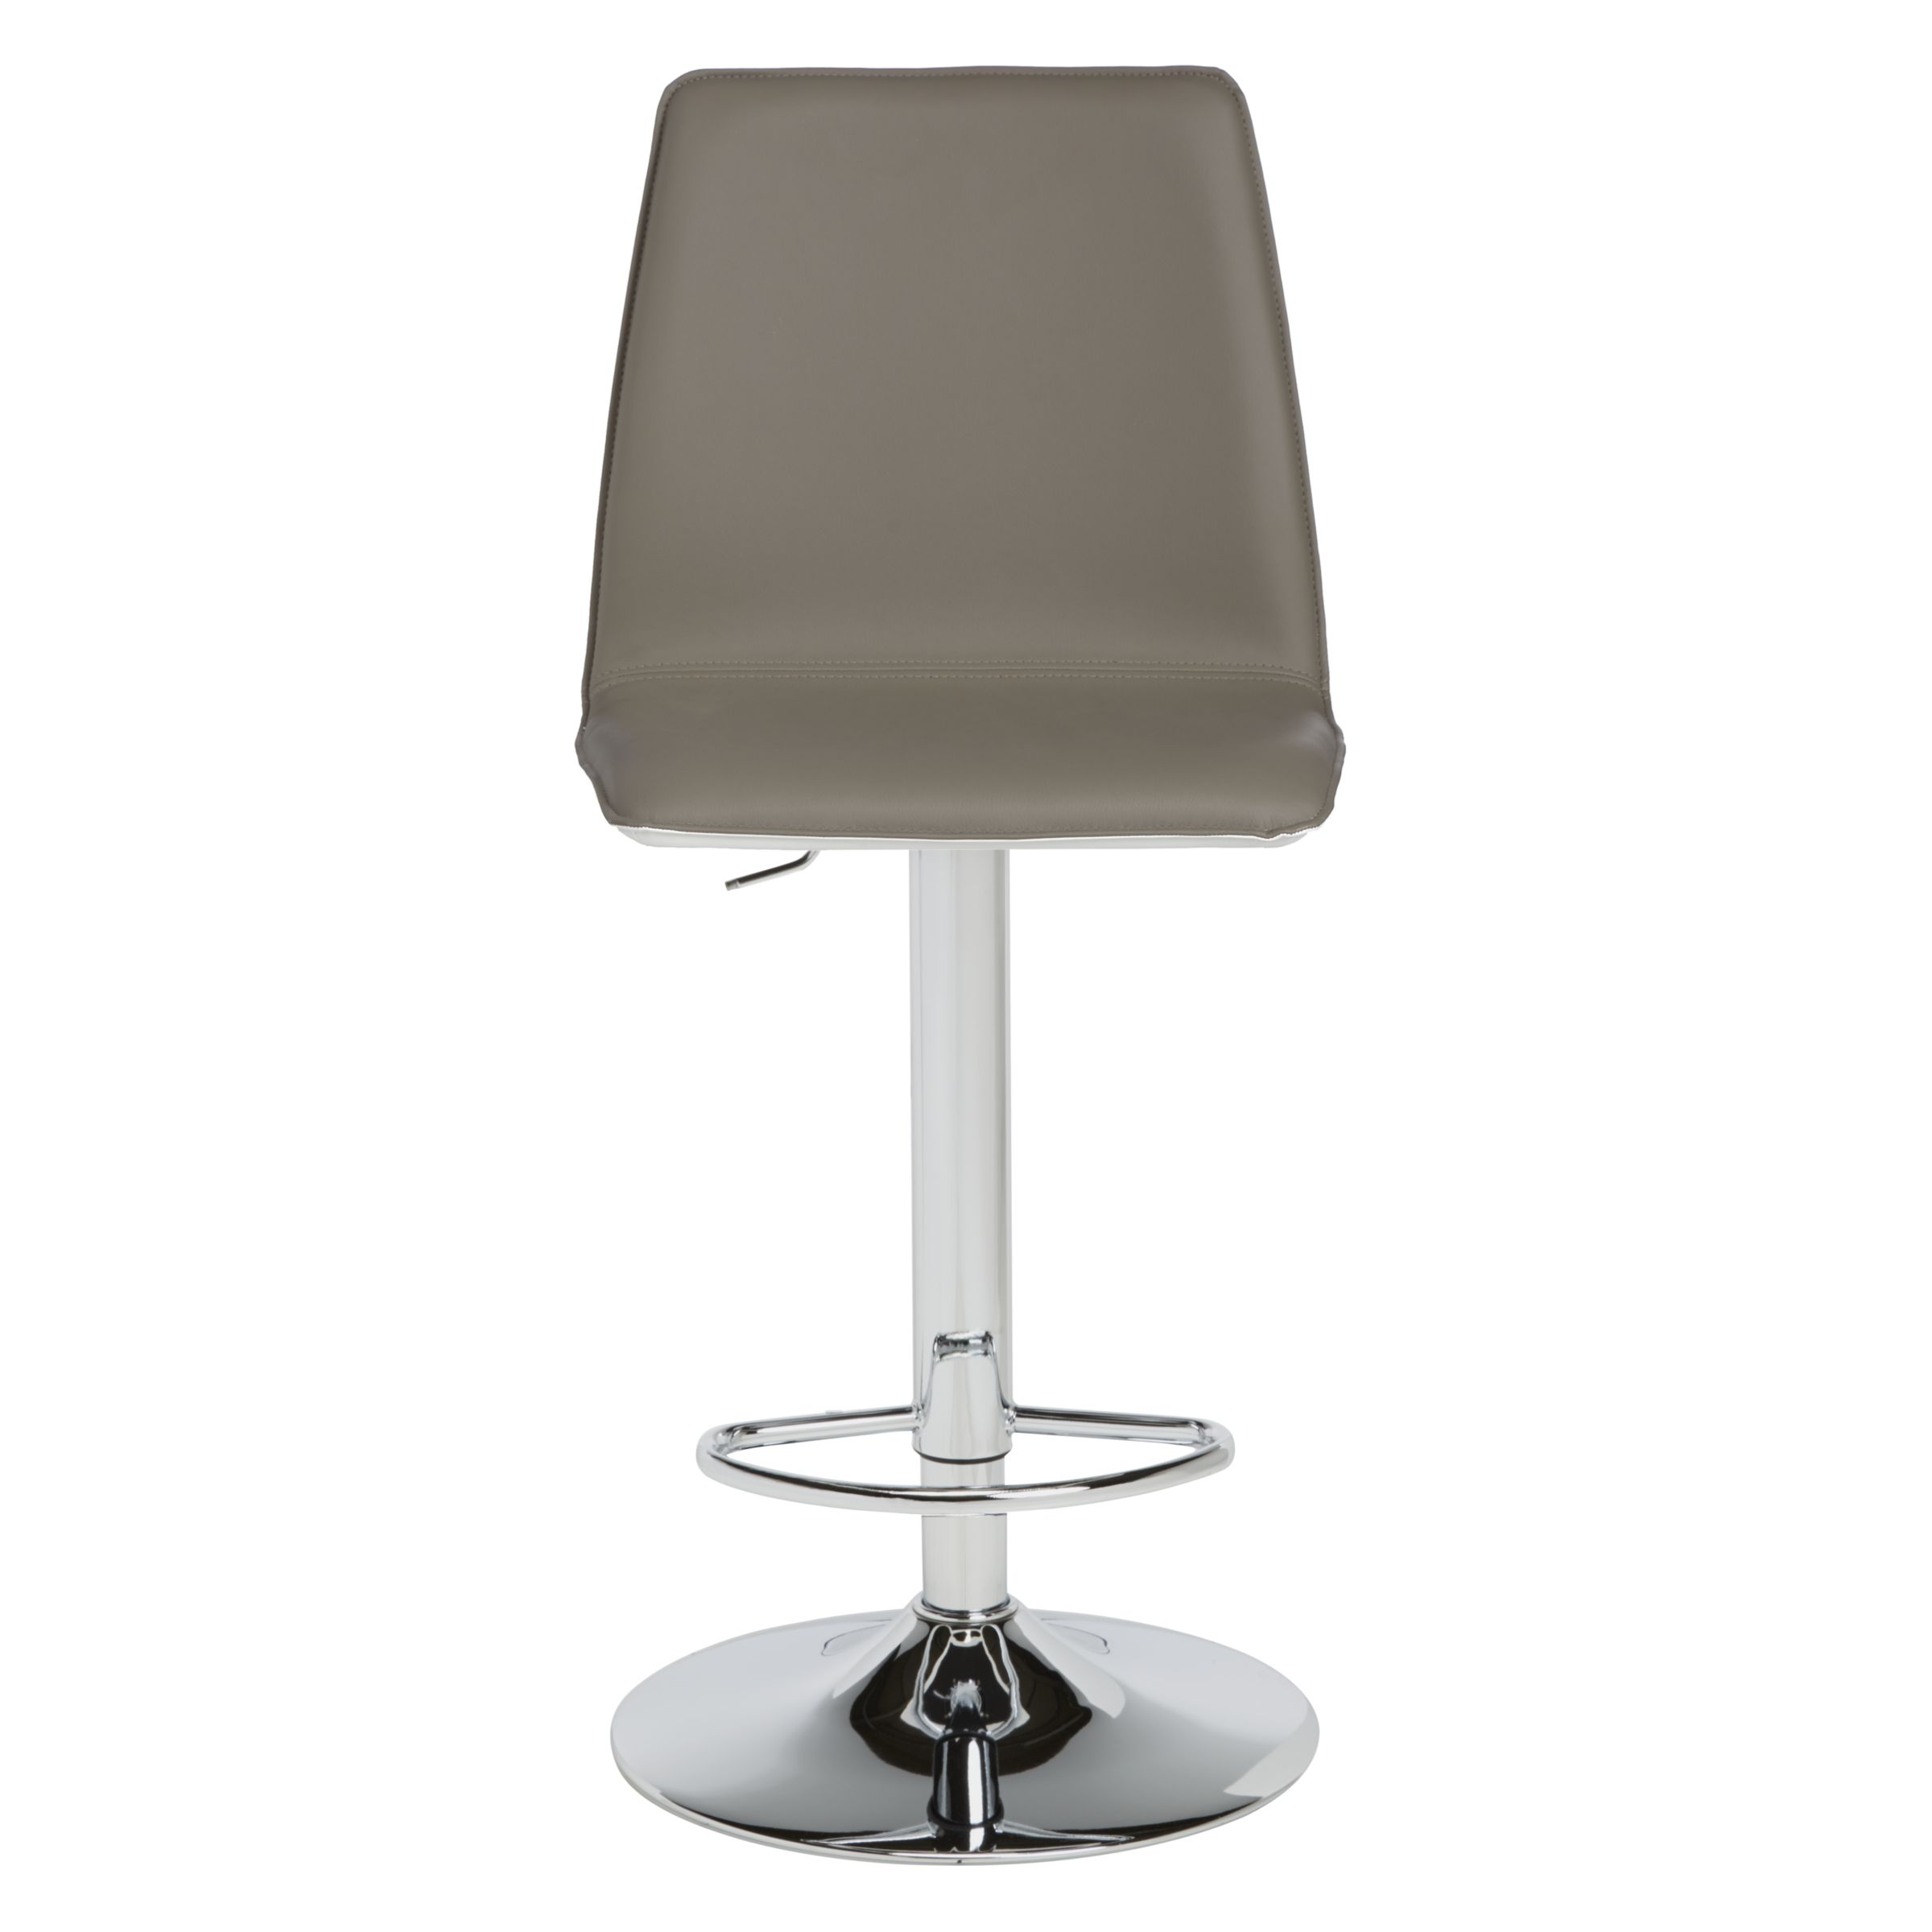 John Lewis Xavier Bar Chair, Taupe/Cream at John Lewis & Partners